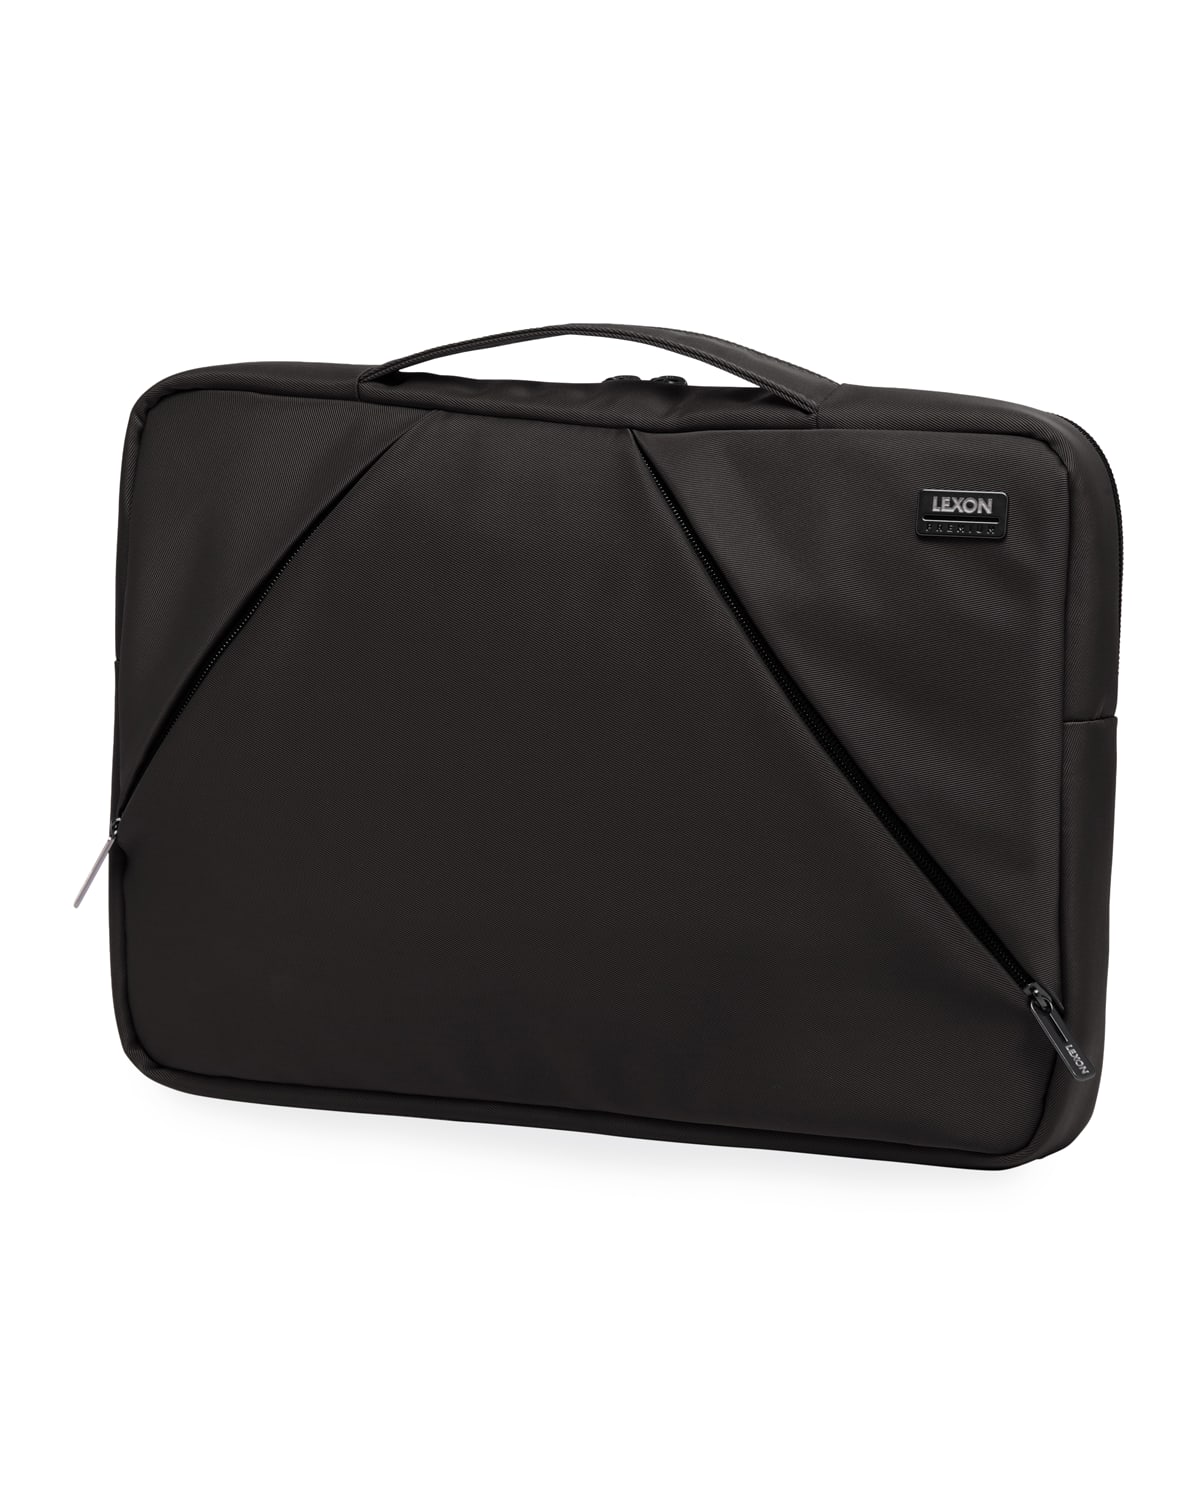 Lexon Design Premium+ Slim Laptop Bag